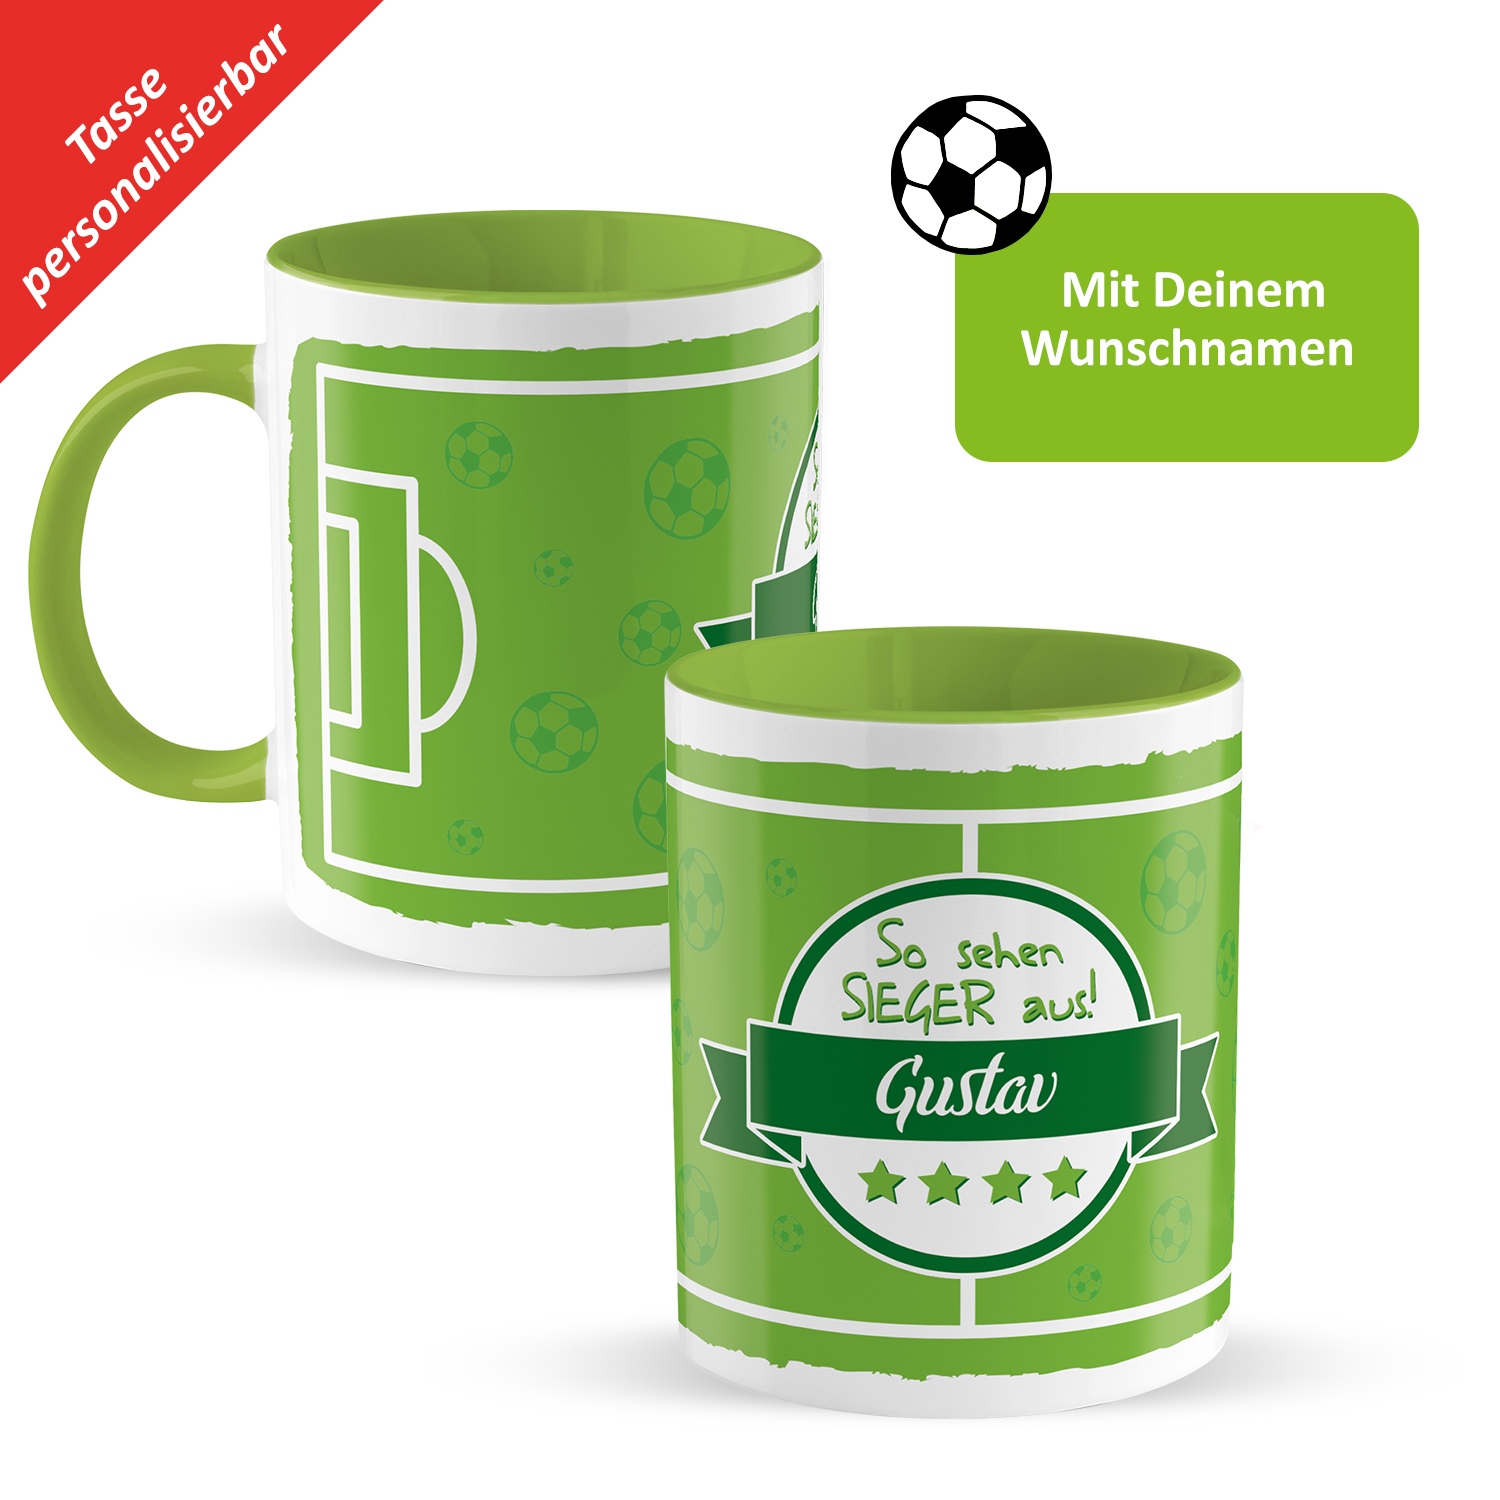 Fußball-Tasse »So sehen Sieger aus!« mit Wunschnamen, Fußballfeld, grün, personalisiert